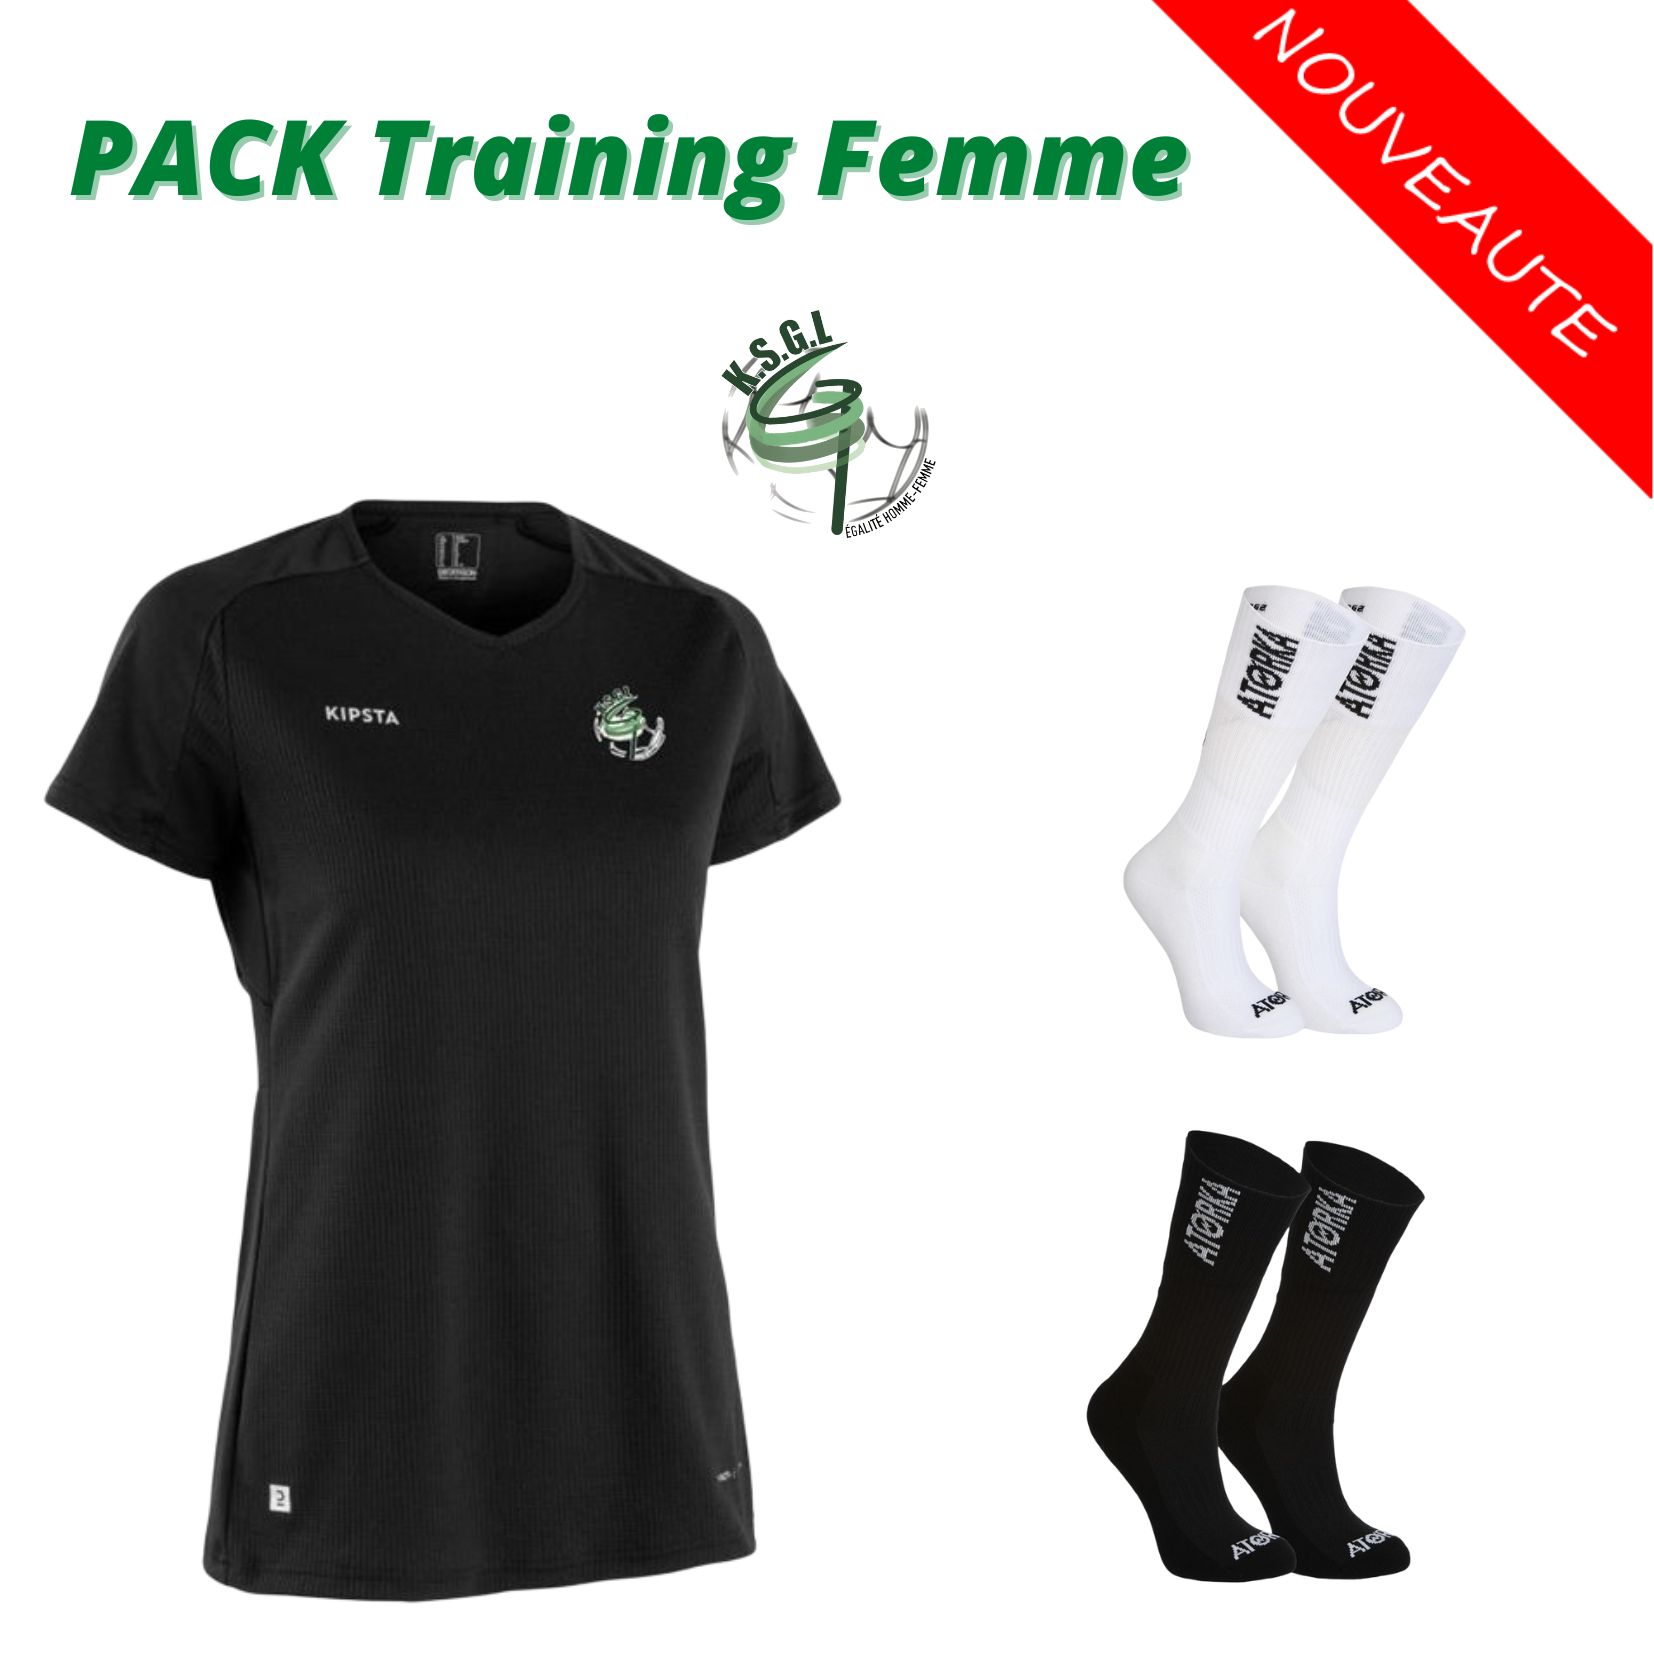 Pack Training Femme / 22,50 €